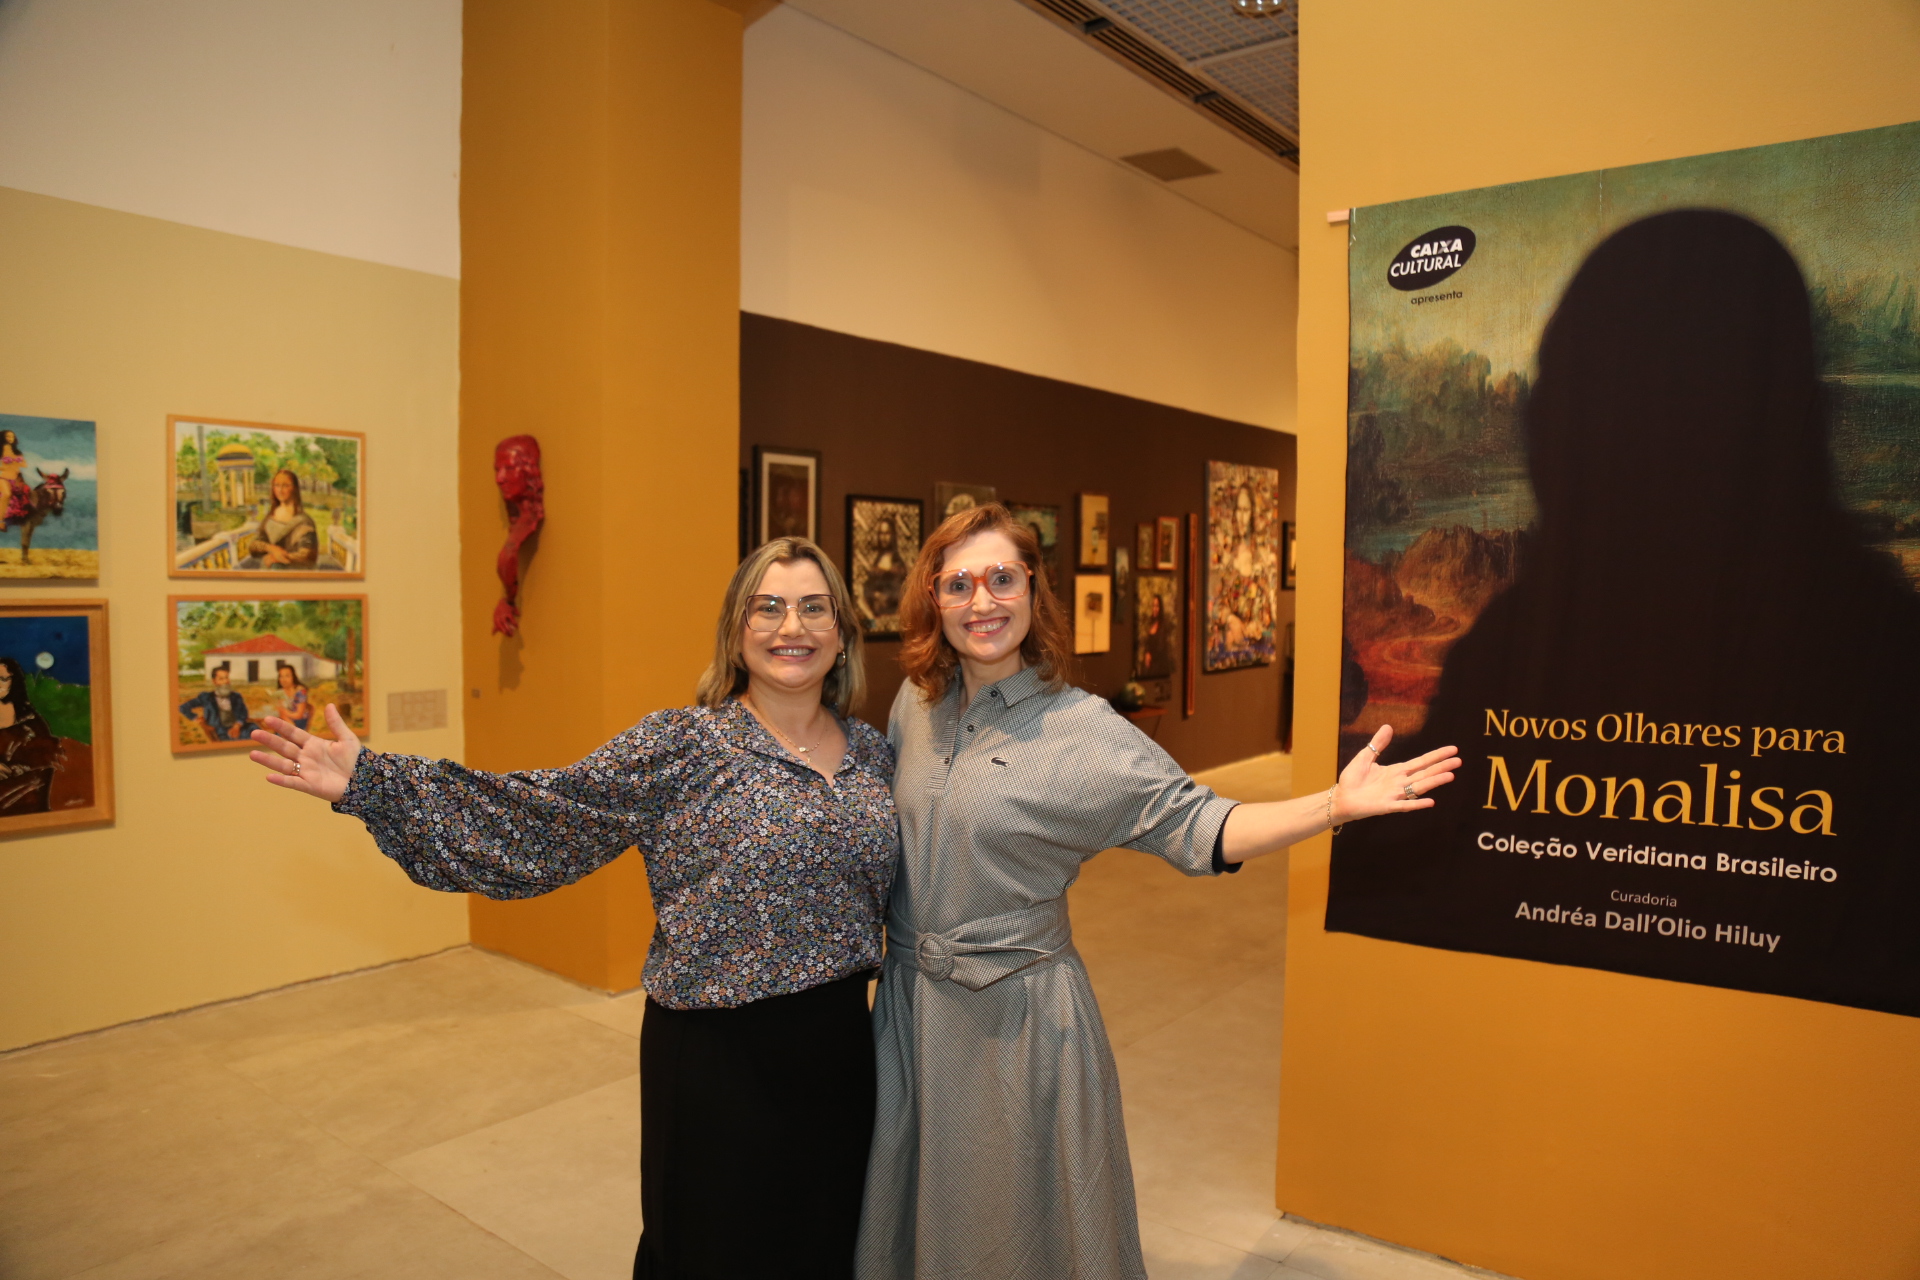 23 ª Exposição “Novos Olhares Para Monalisa” foi aberta na Caixa Cultural de Fortaleza